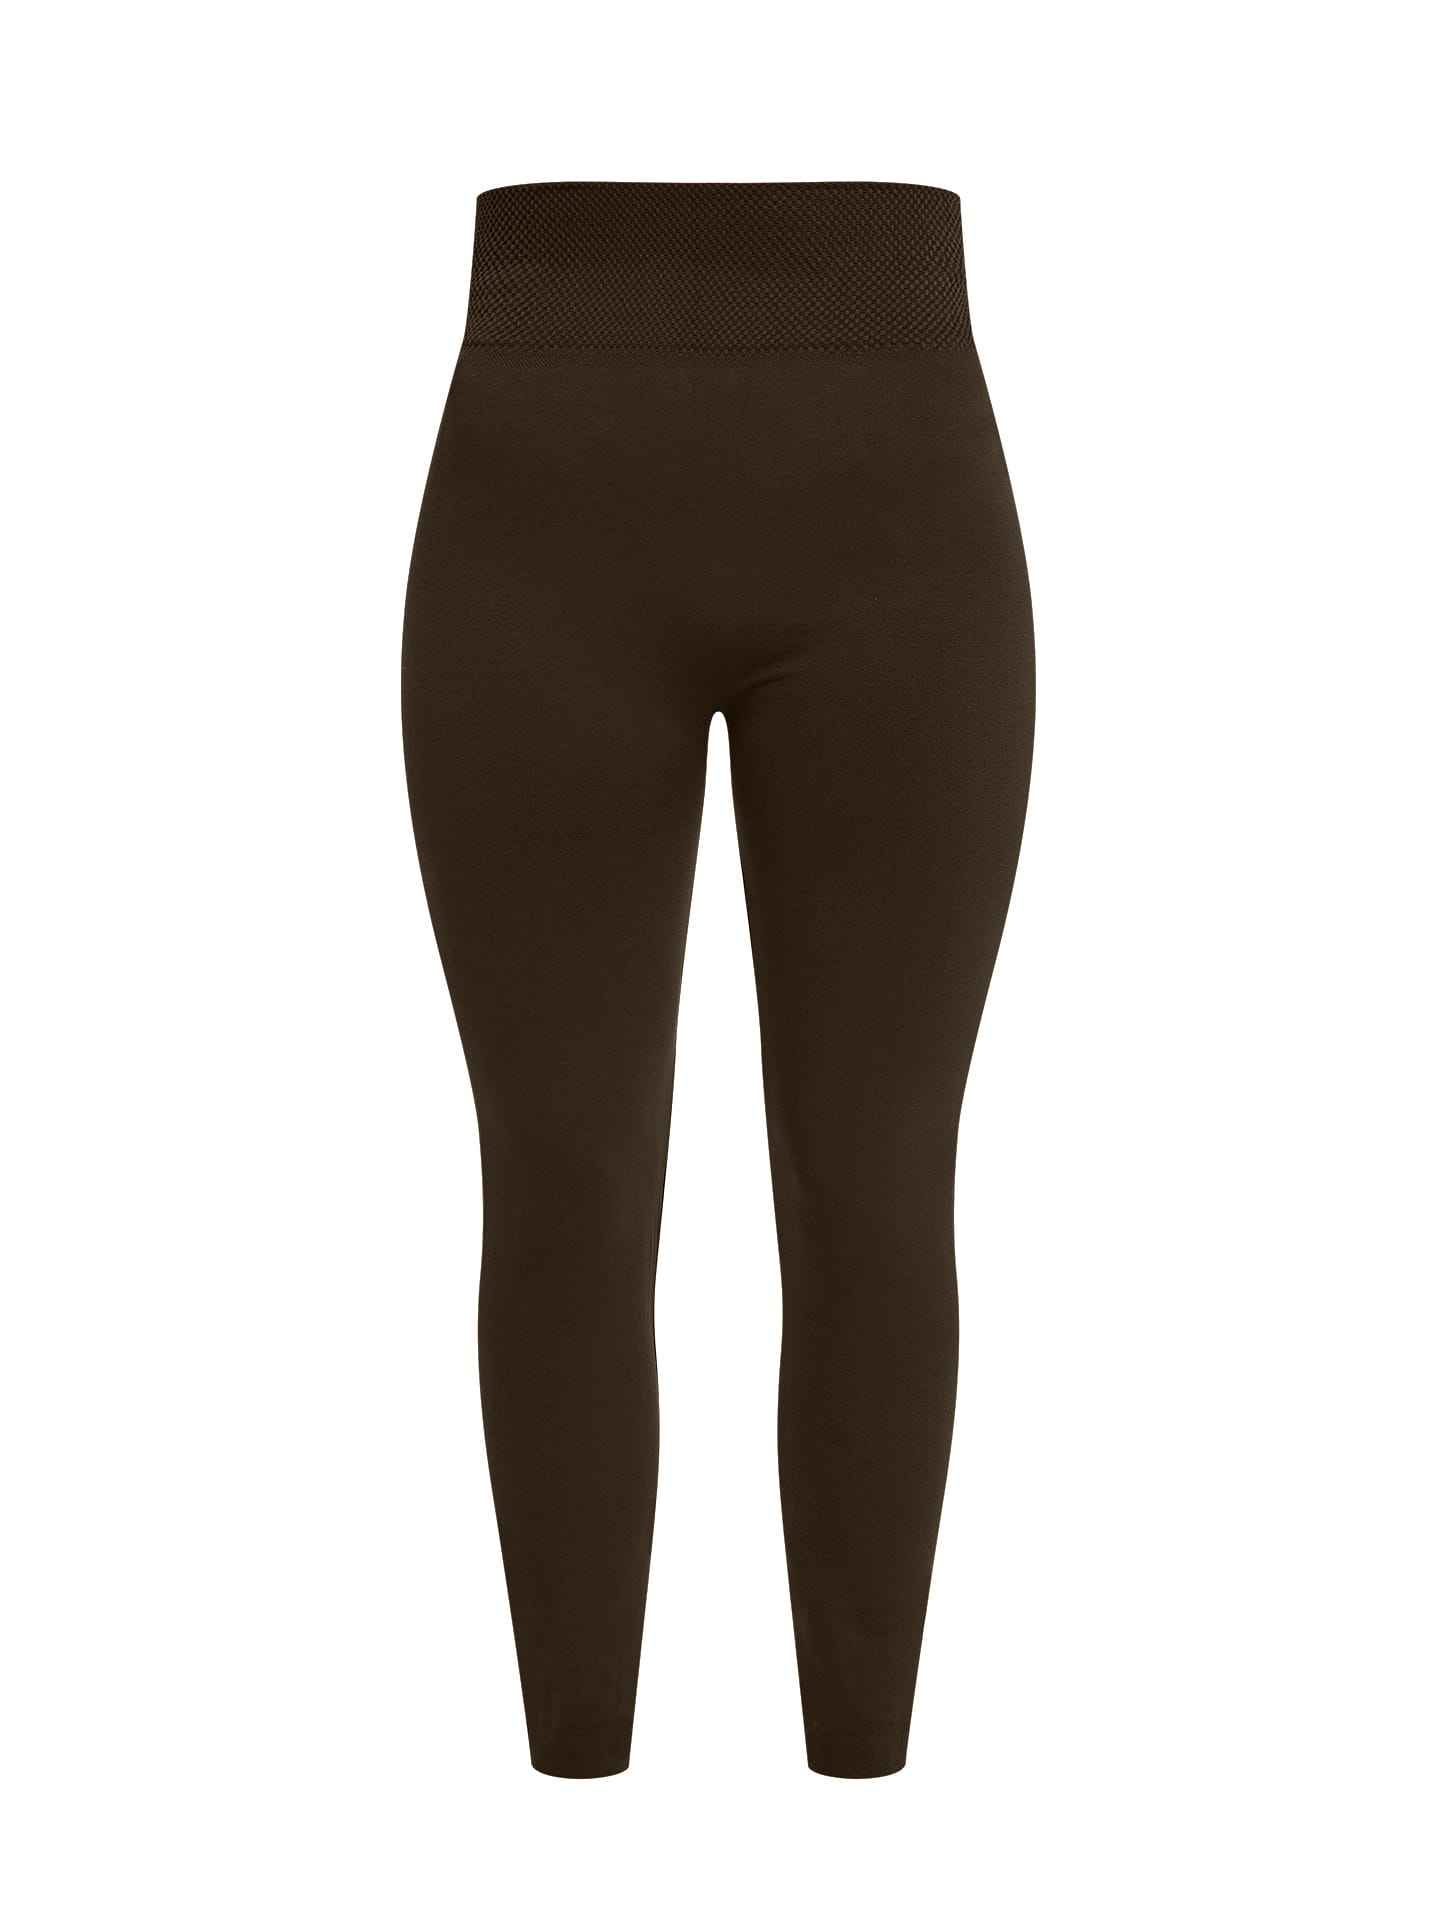 Elastic thermal leggings curvy in dark brown, 6.99€ | Celestino